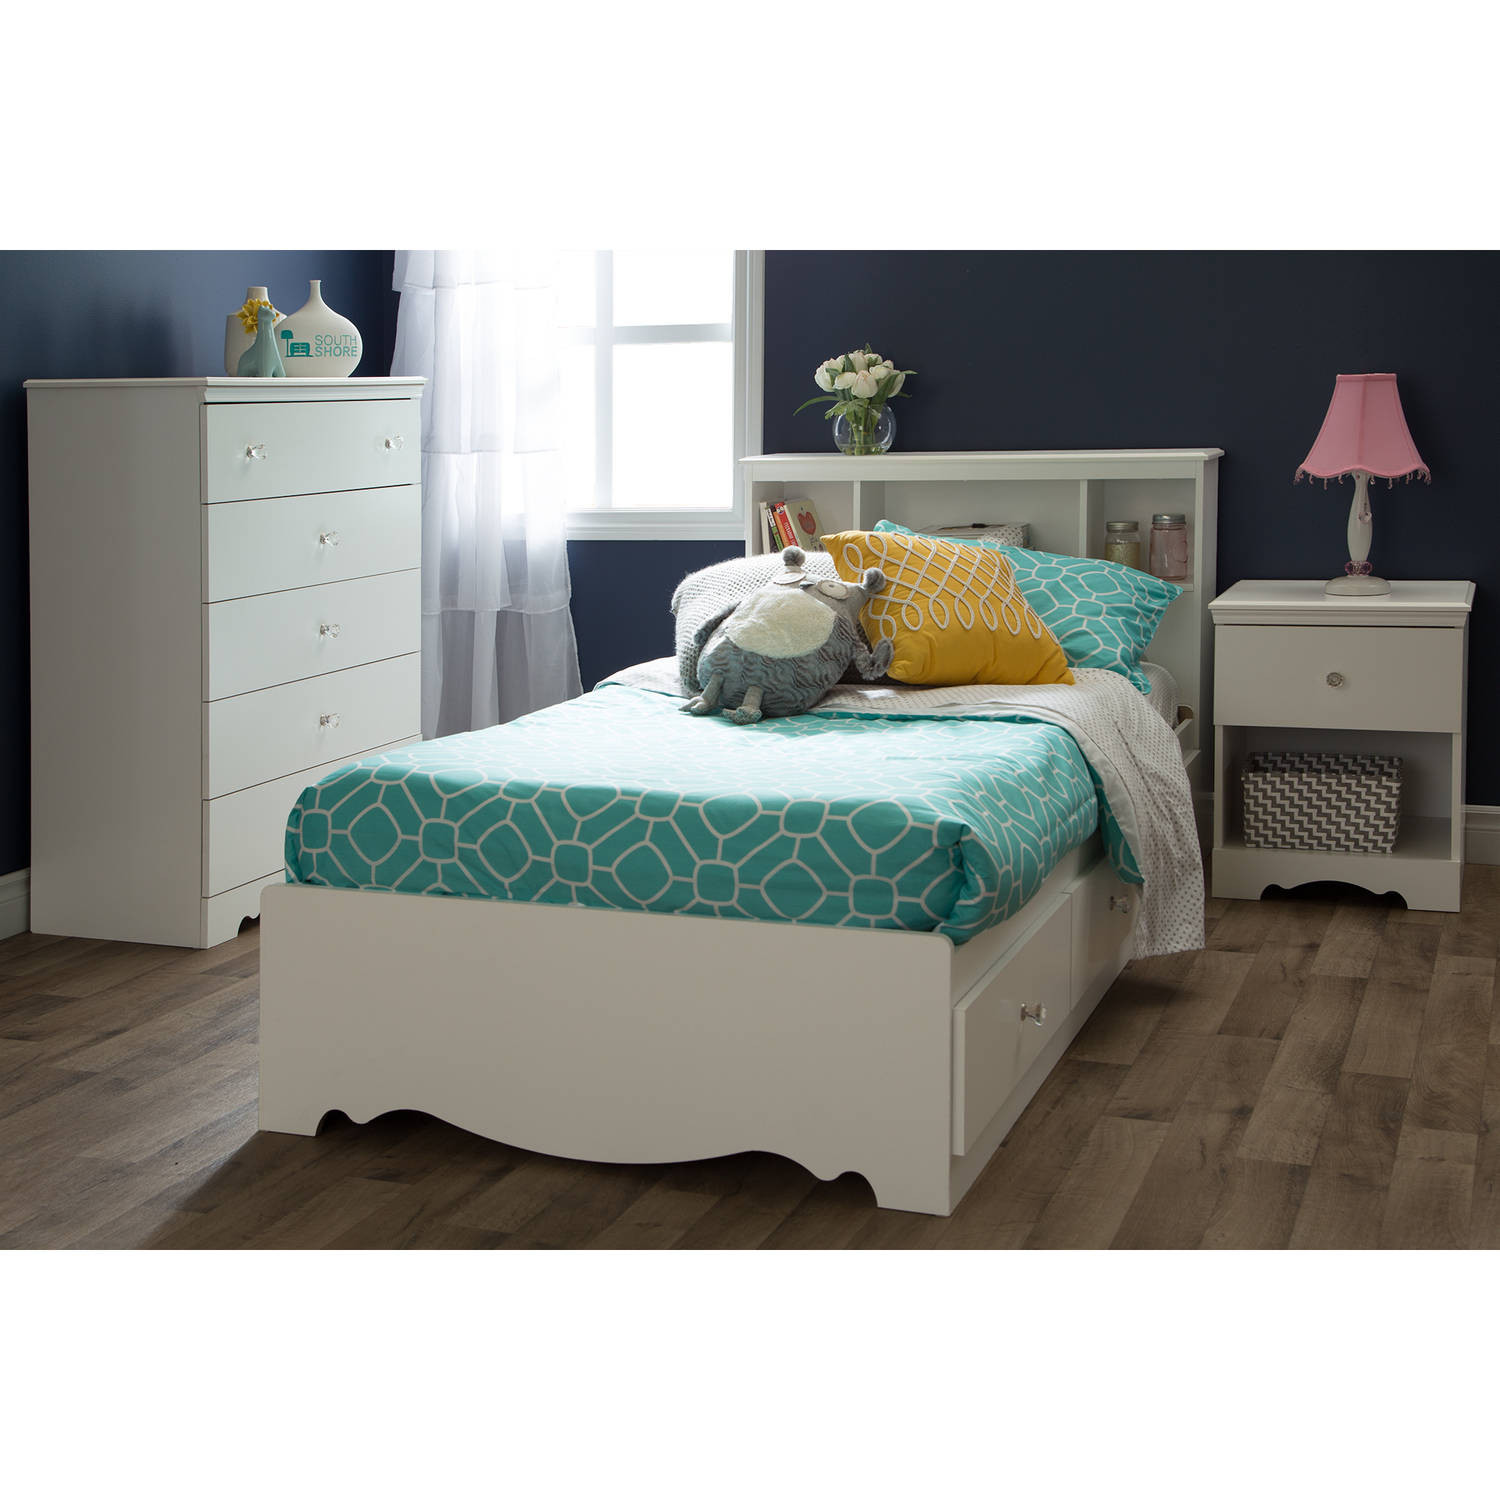 Walmart Bedroom Sets For Kids
 South Shore Crystal Kids Bedroom Furniture Collection